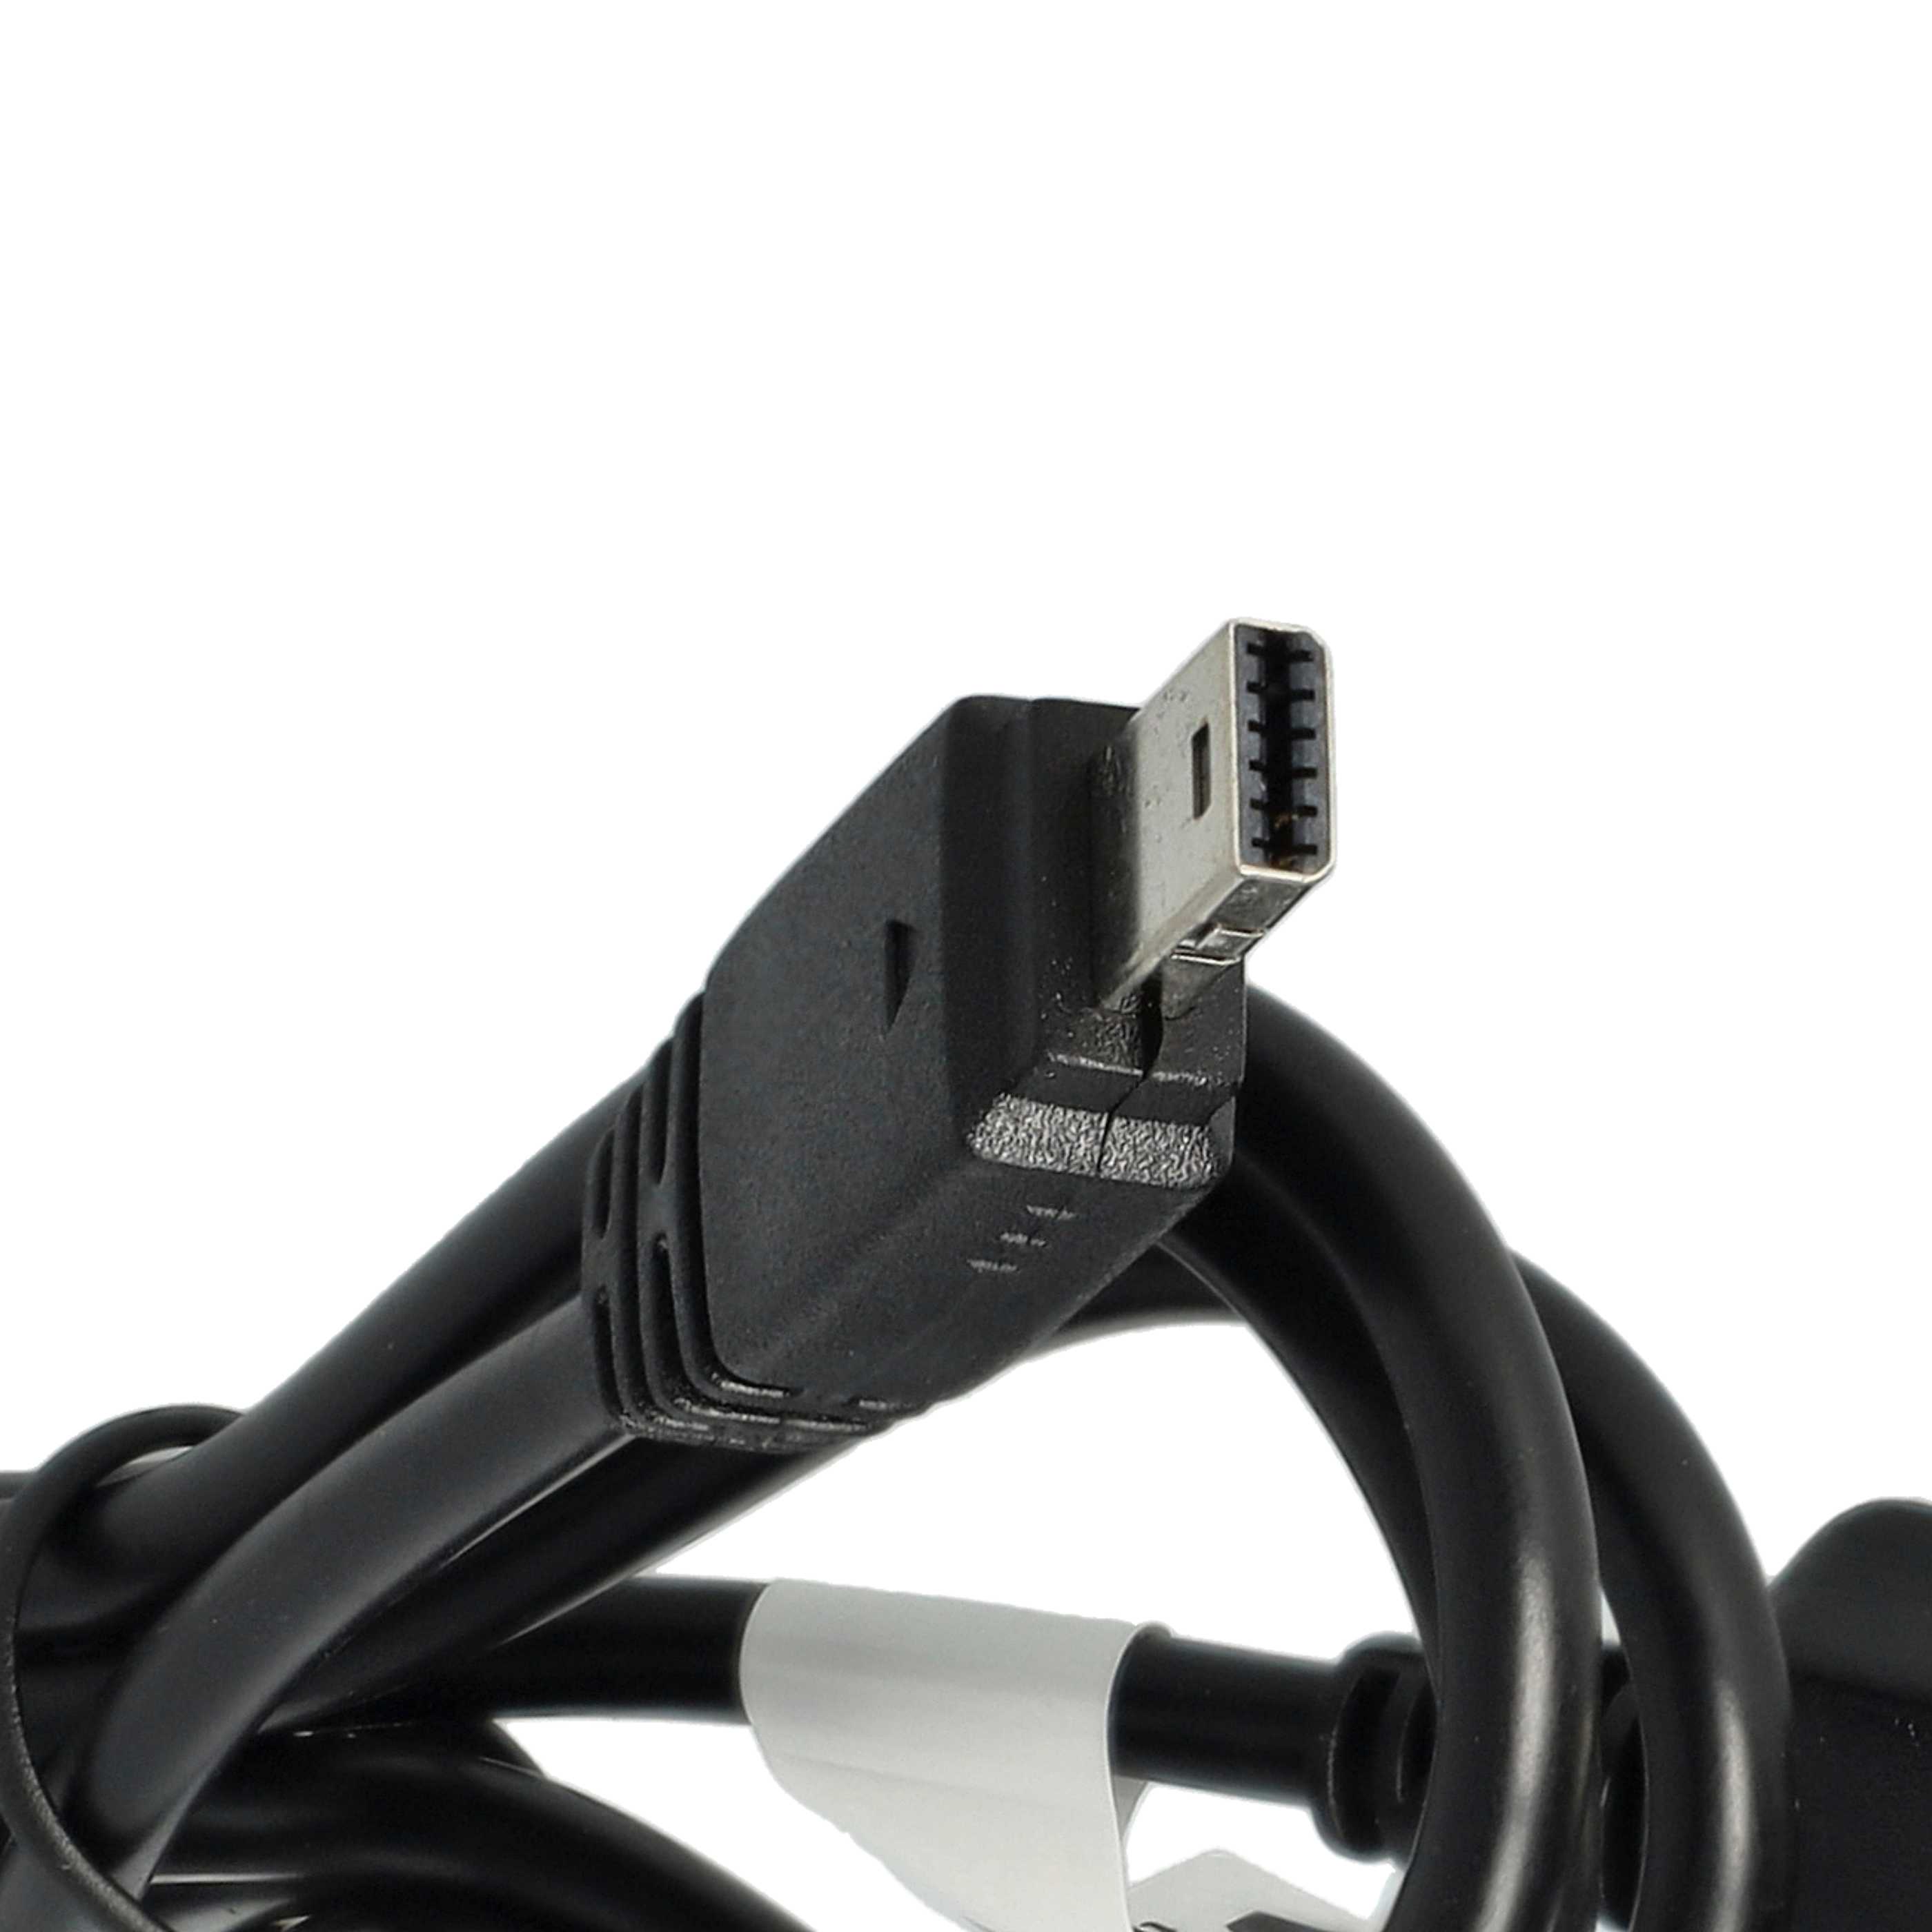 USB Datenkabel als Ersatz für Casio U-8, EMC-6U, EMC-6 für Kamera - 100 cm